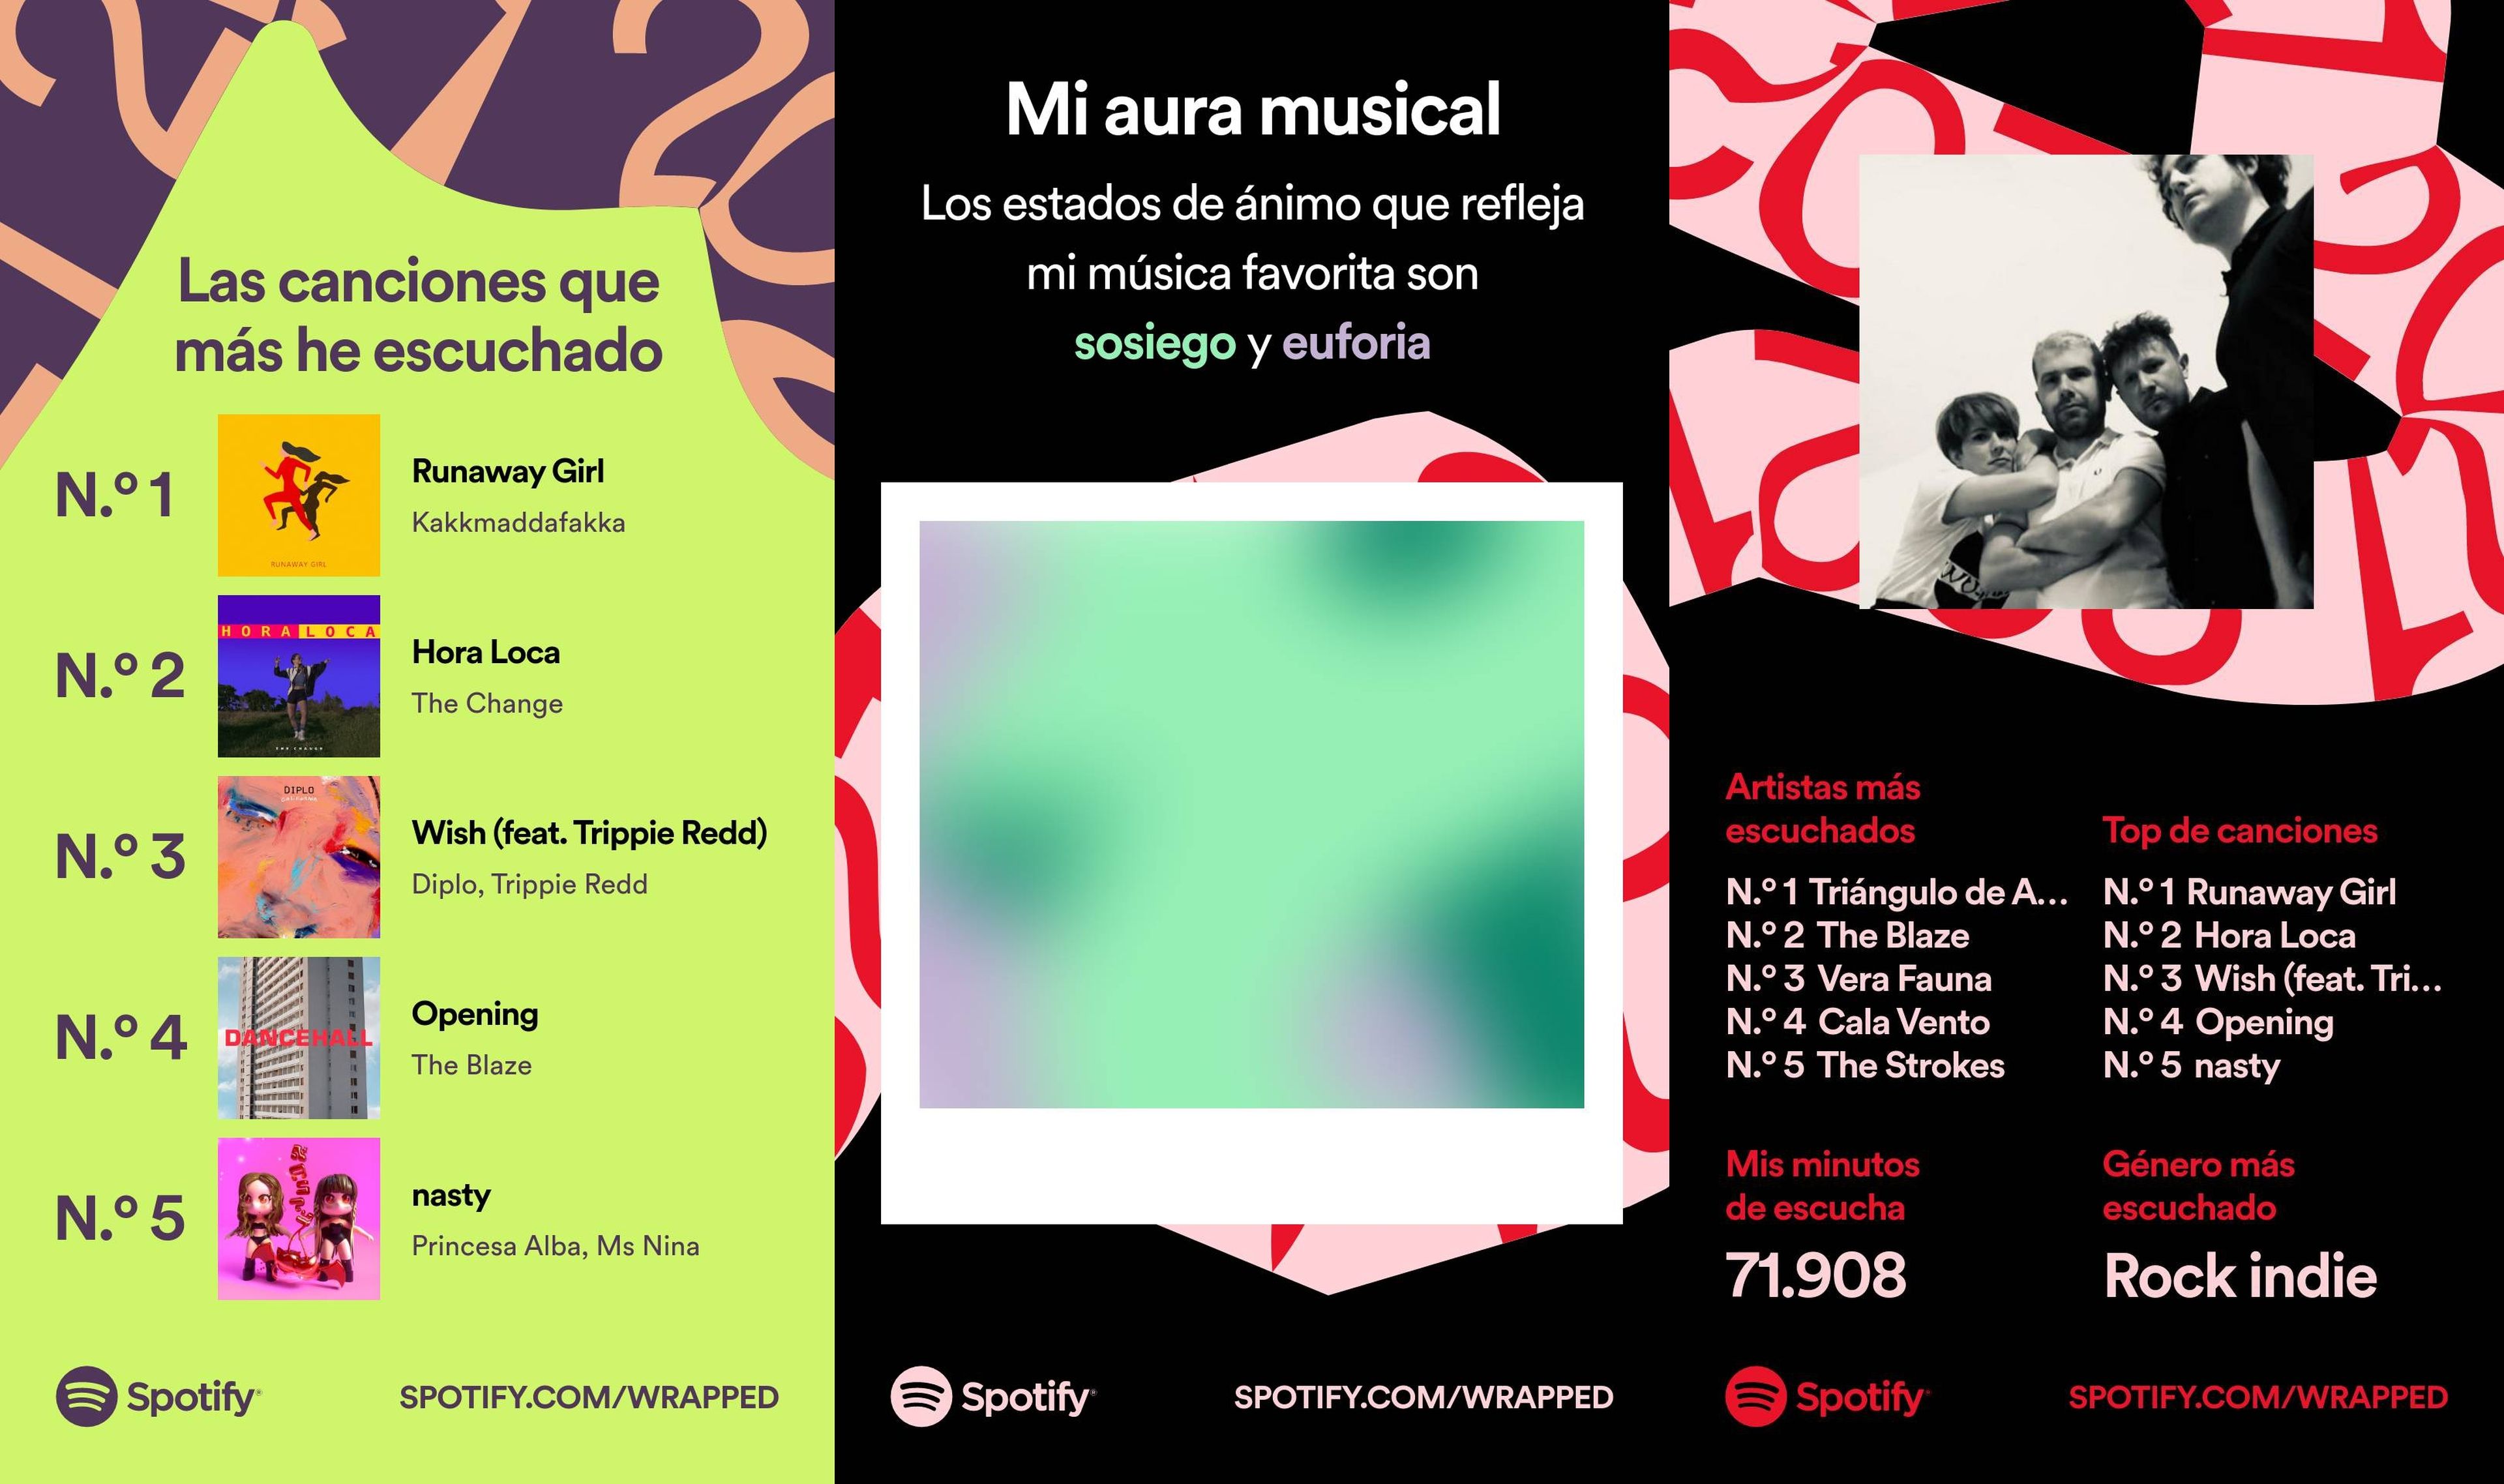 El Spotify Wrapped ya está aquí, así puedes descubrir las canciones que más has escuchado este año